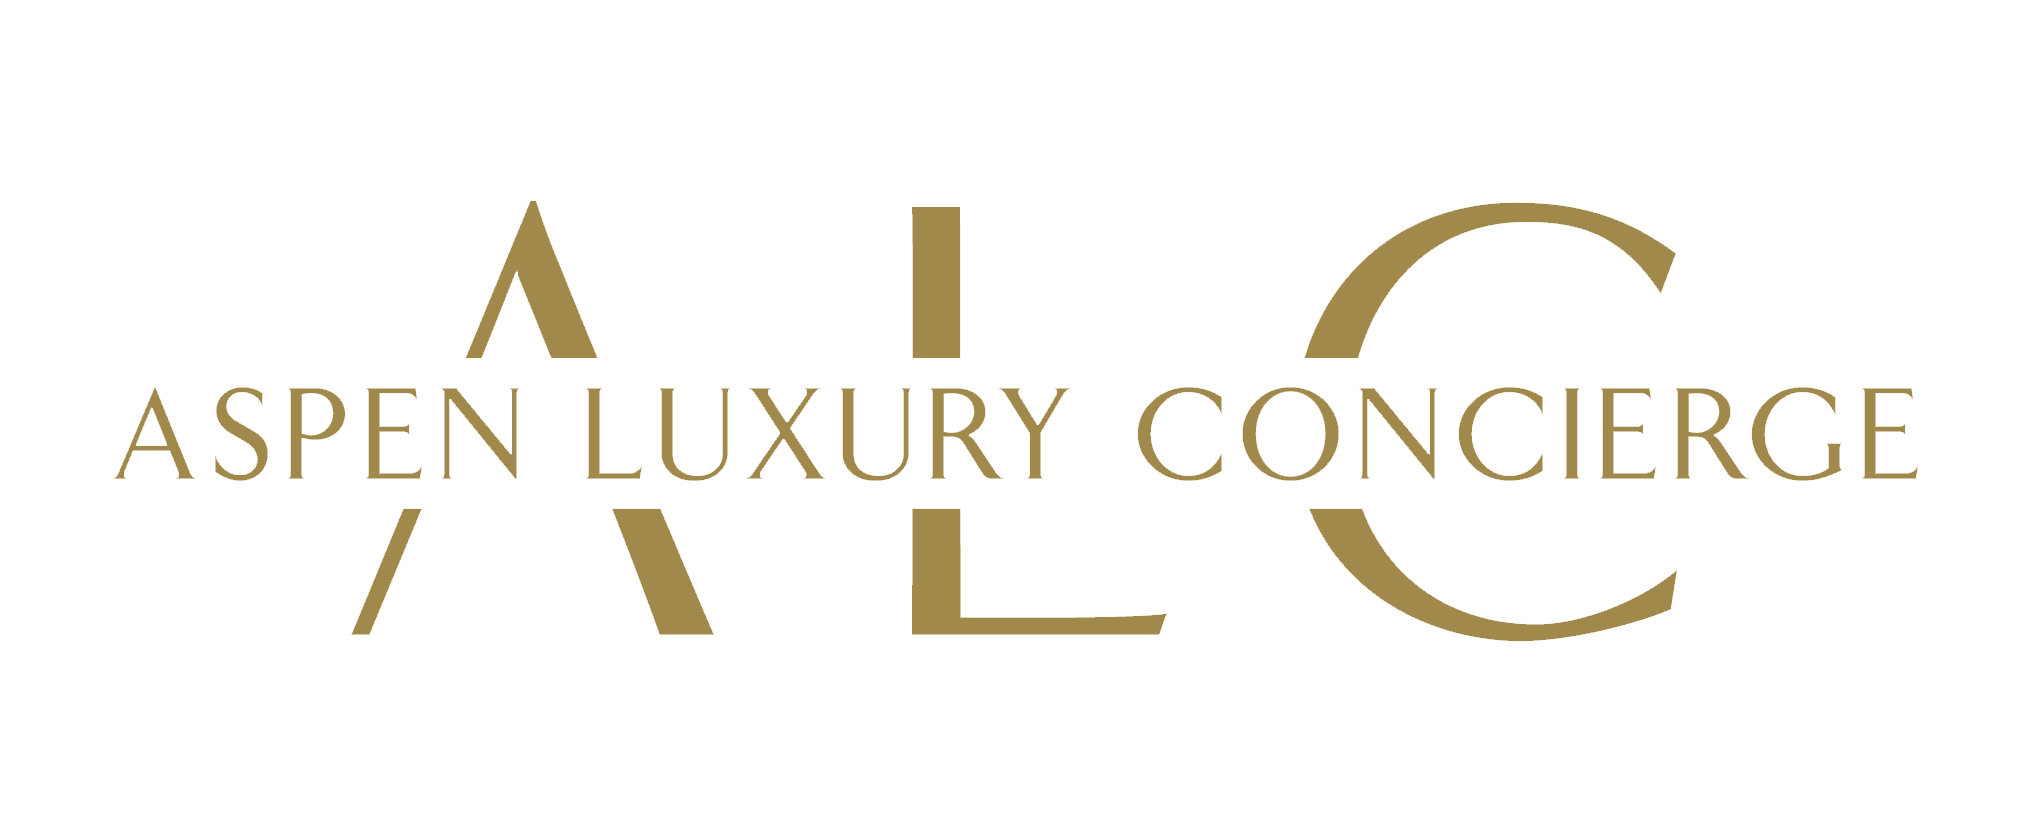 Aspen Luxury Concierge